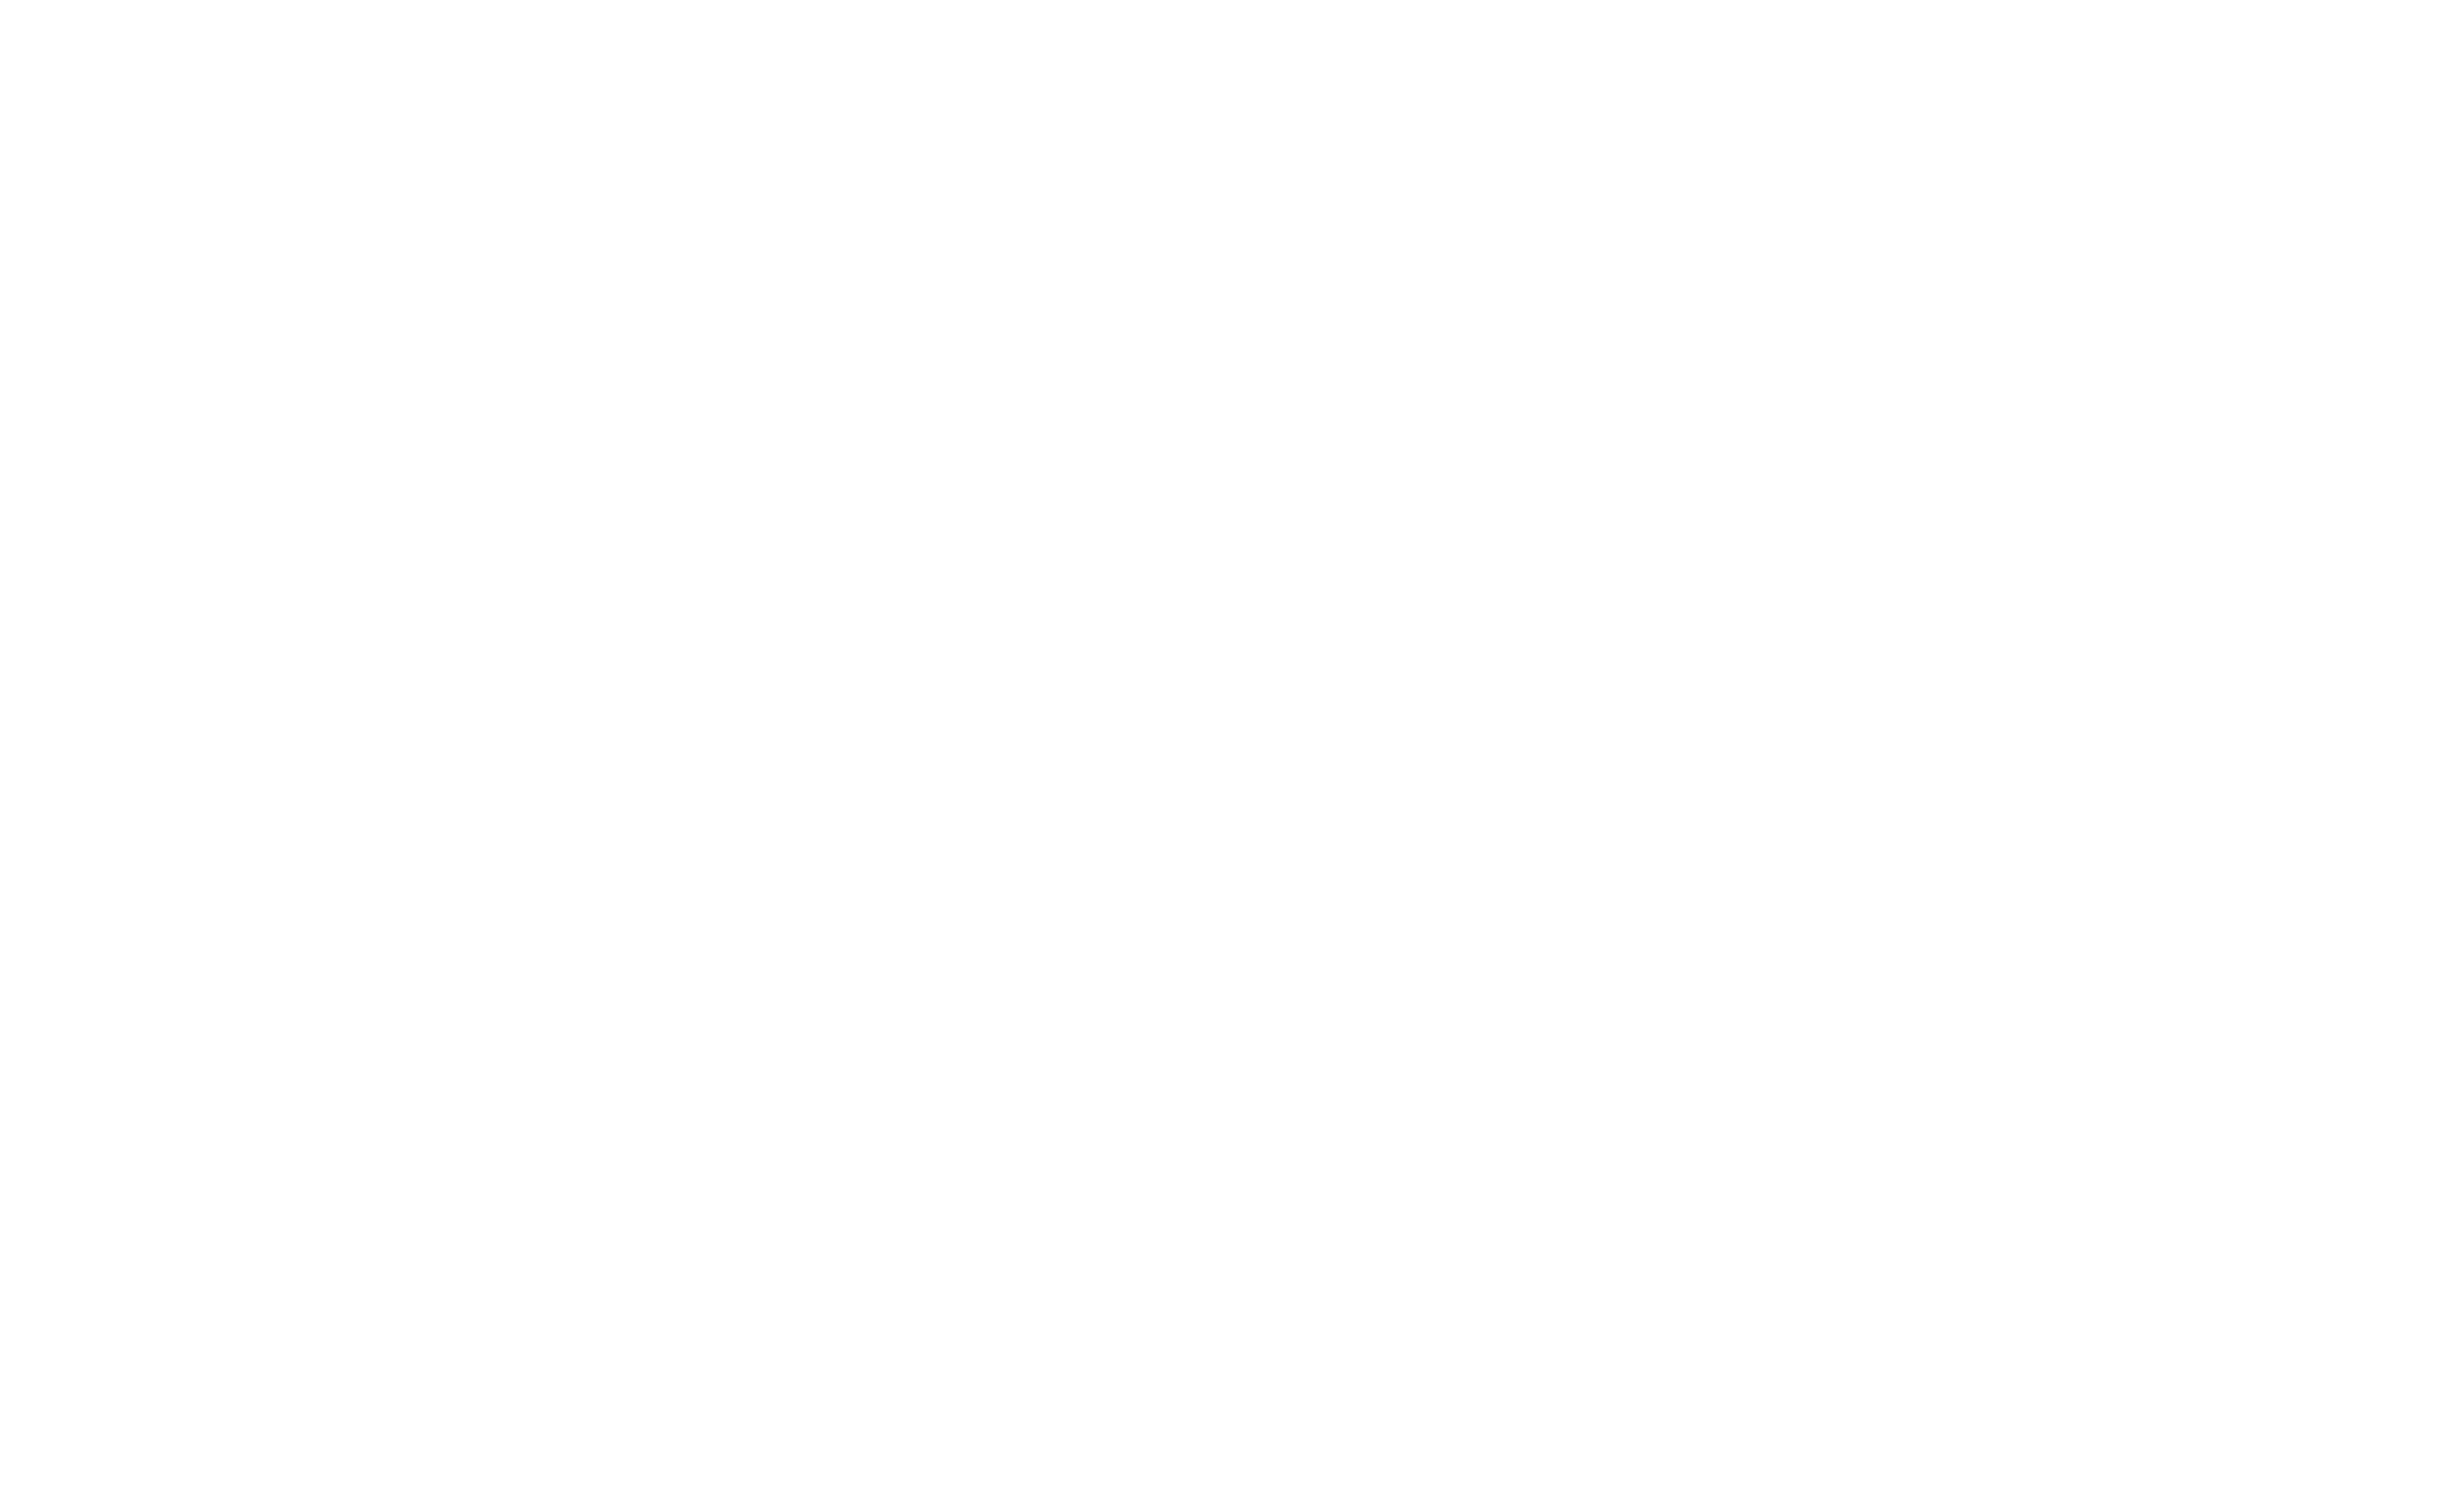 Zeus Electric Motorsport